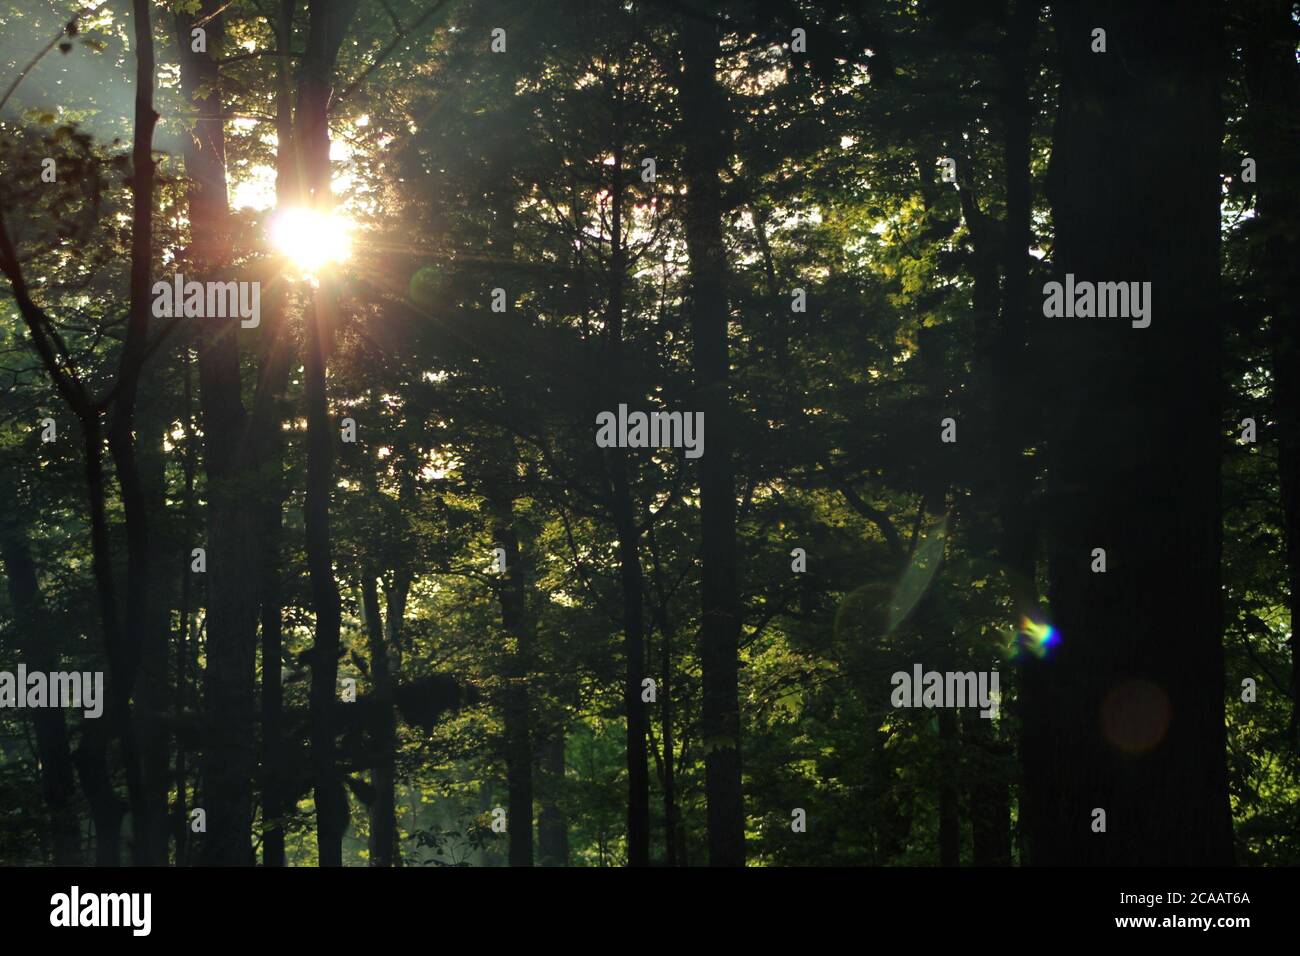 The sun peaking through some trees. Stock Photo